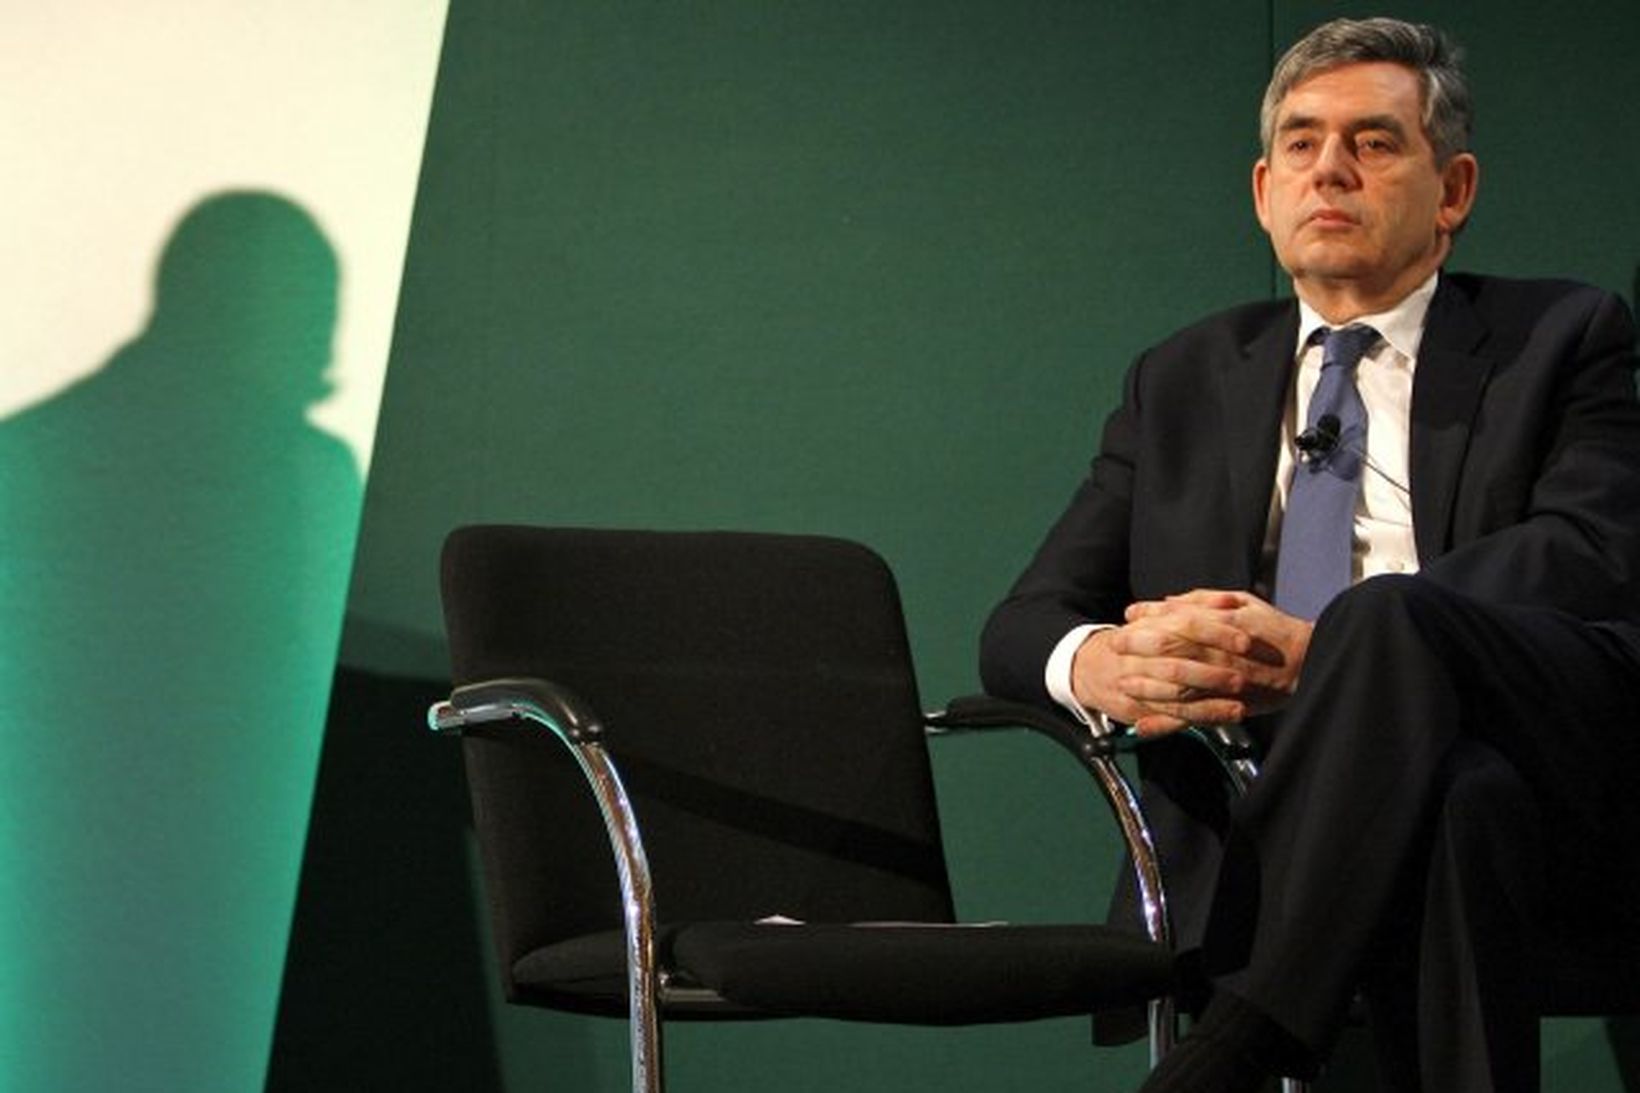 Gordon Brown, forsætisráðherra Bretlands.